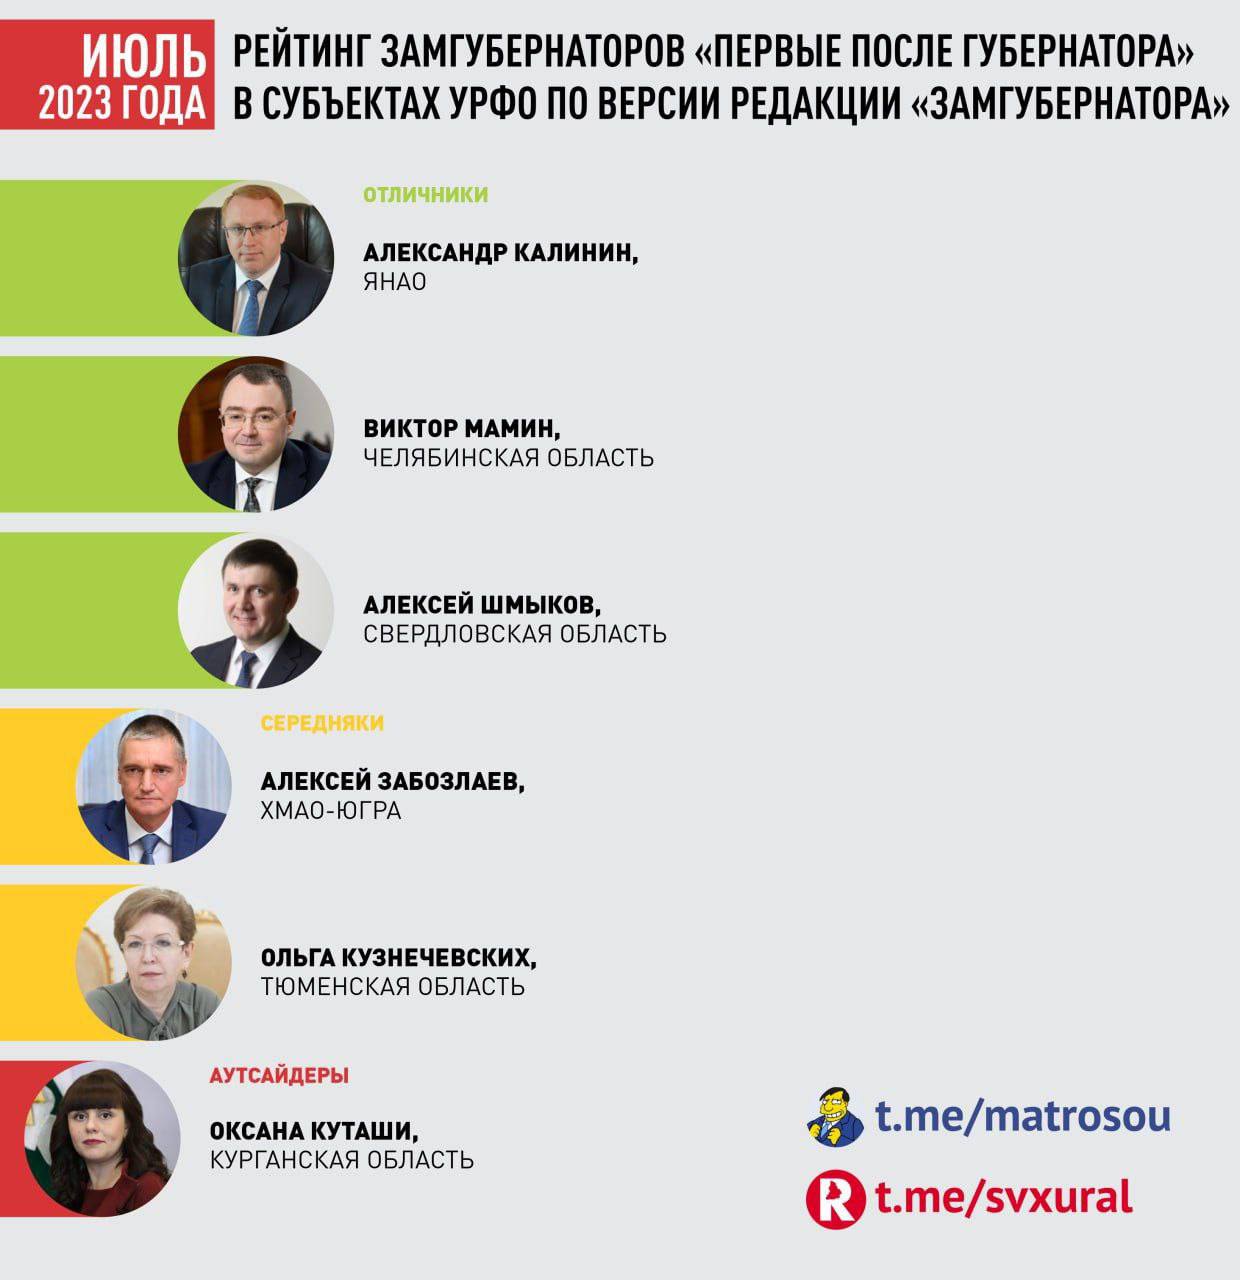 Первый замгубернатора Шмыков возглавил новую рабочую группу в Свердловской области